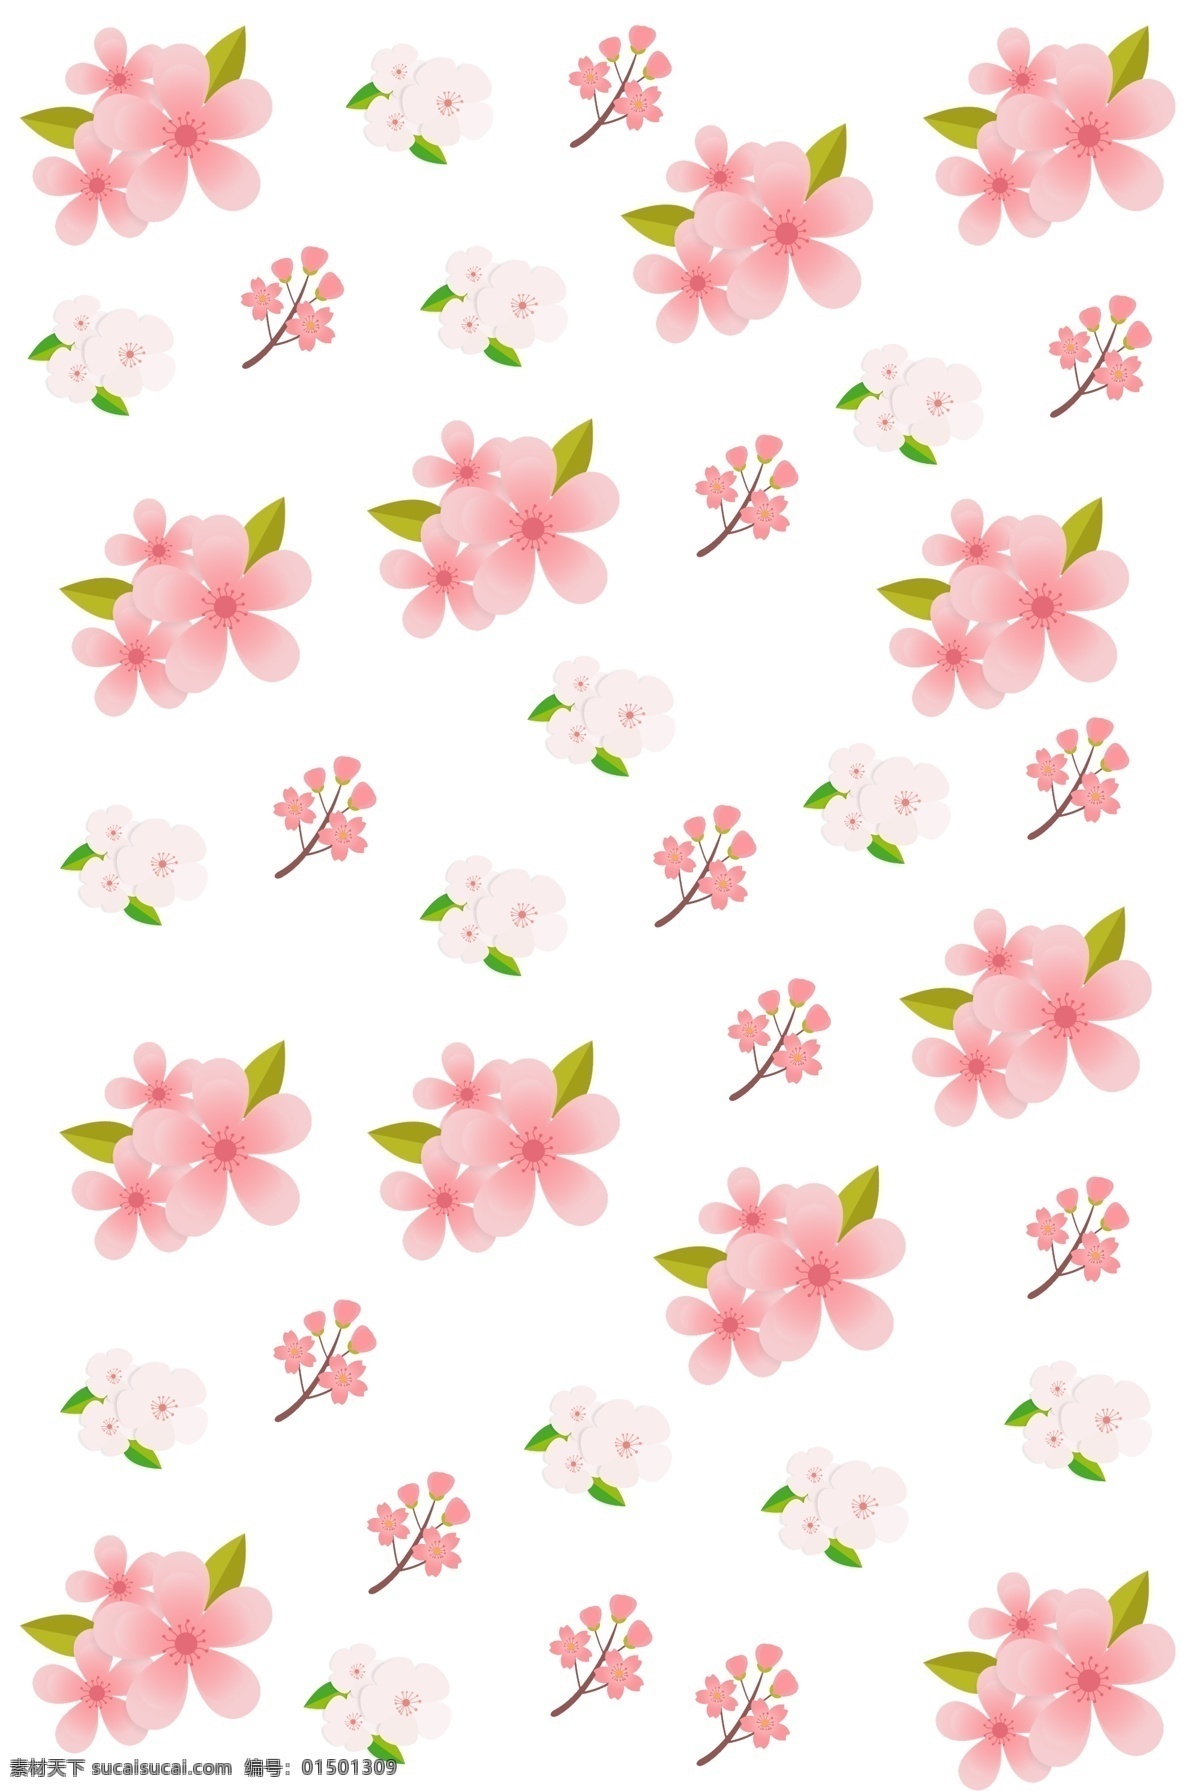 粉色 桃花 底纹 插画 粉色的桃花 桃花底纹插画 漂亮的桃花 美丽的桃花 花朵 花枝 花卉 鲜花 绿色叶子